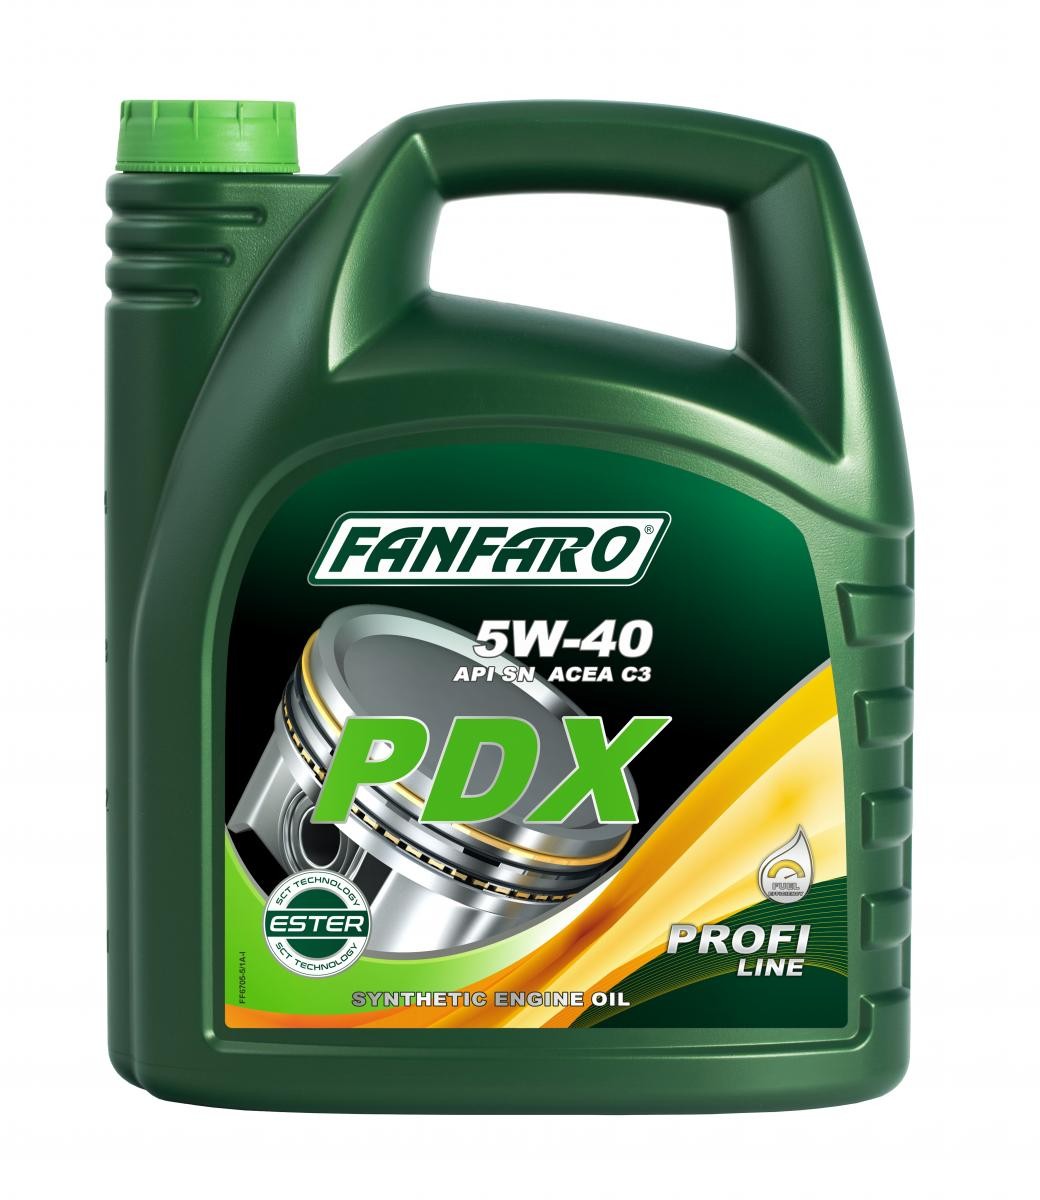 FANFARO Profi Line, PDX 5W-40, 5l, Synthetic Oil Motor oil FF6705-5 buy